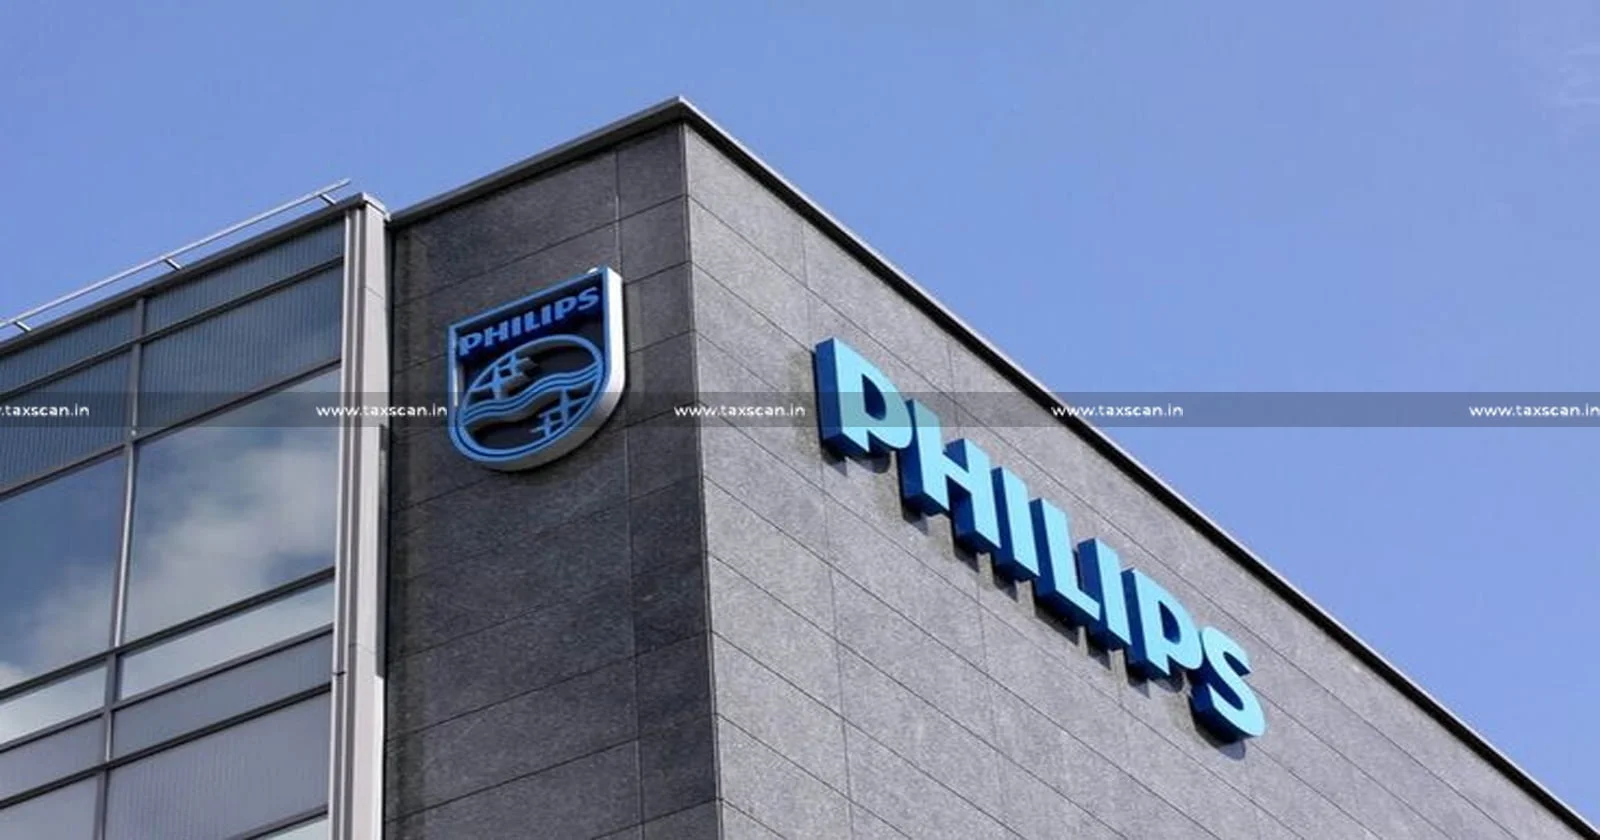 MBA Vacancy in Philips - Vacancy in Philips - CA Vacancy in Philips - Jobscan - CA Vacancy in chennai - taxscan